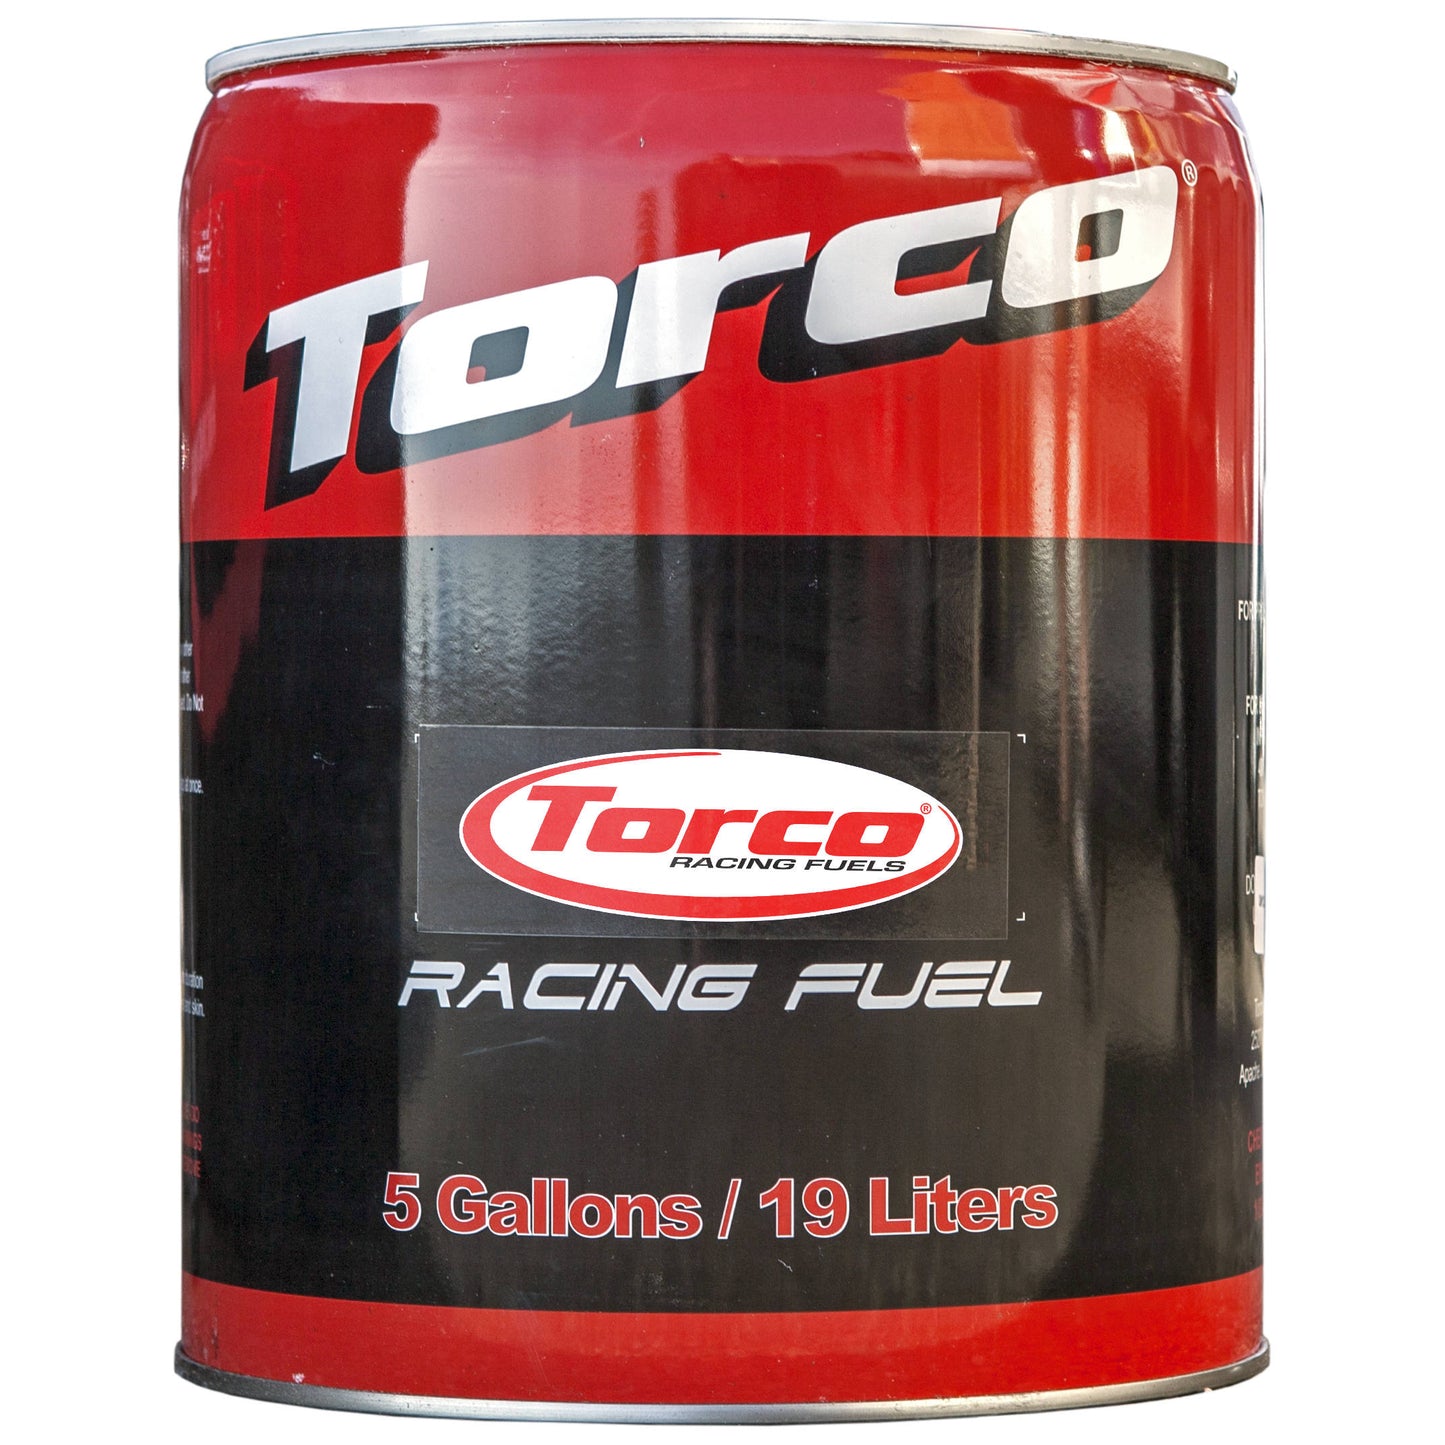 Torco Race Ethanol Fuel e85 85% Blend t85 5 gal pail